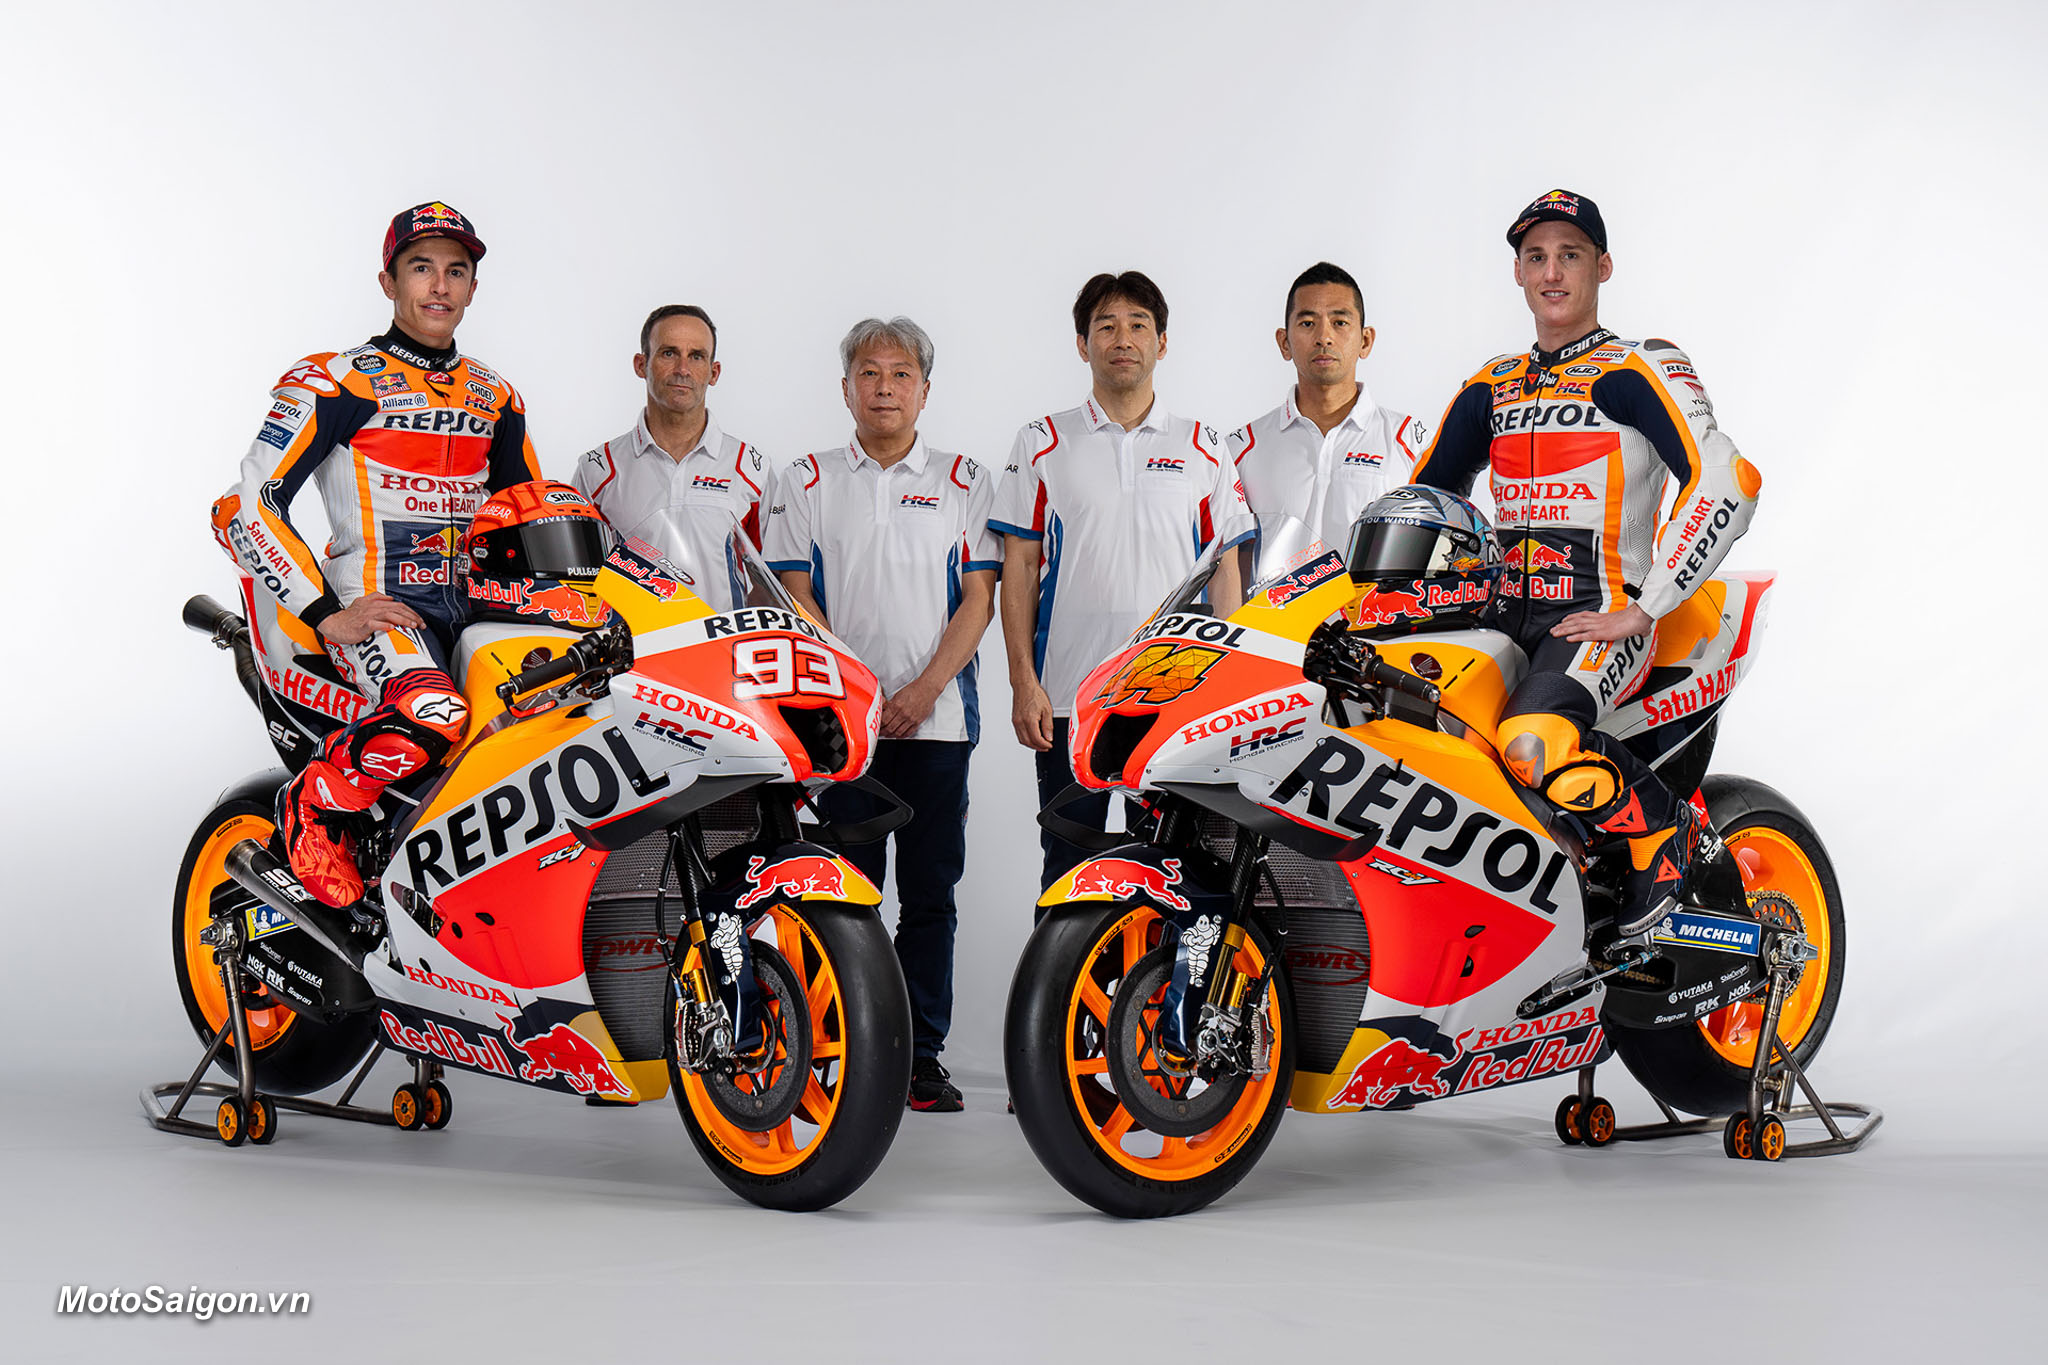 Honda RC213V 2022 - Bộ ảnh đội đua Repsol của Honda tại MotoGP 2022